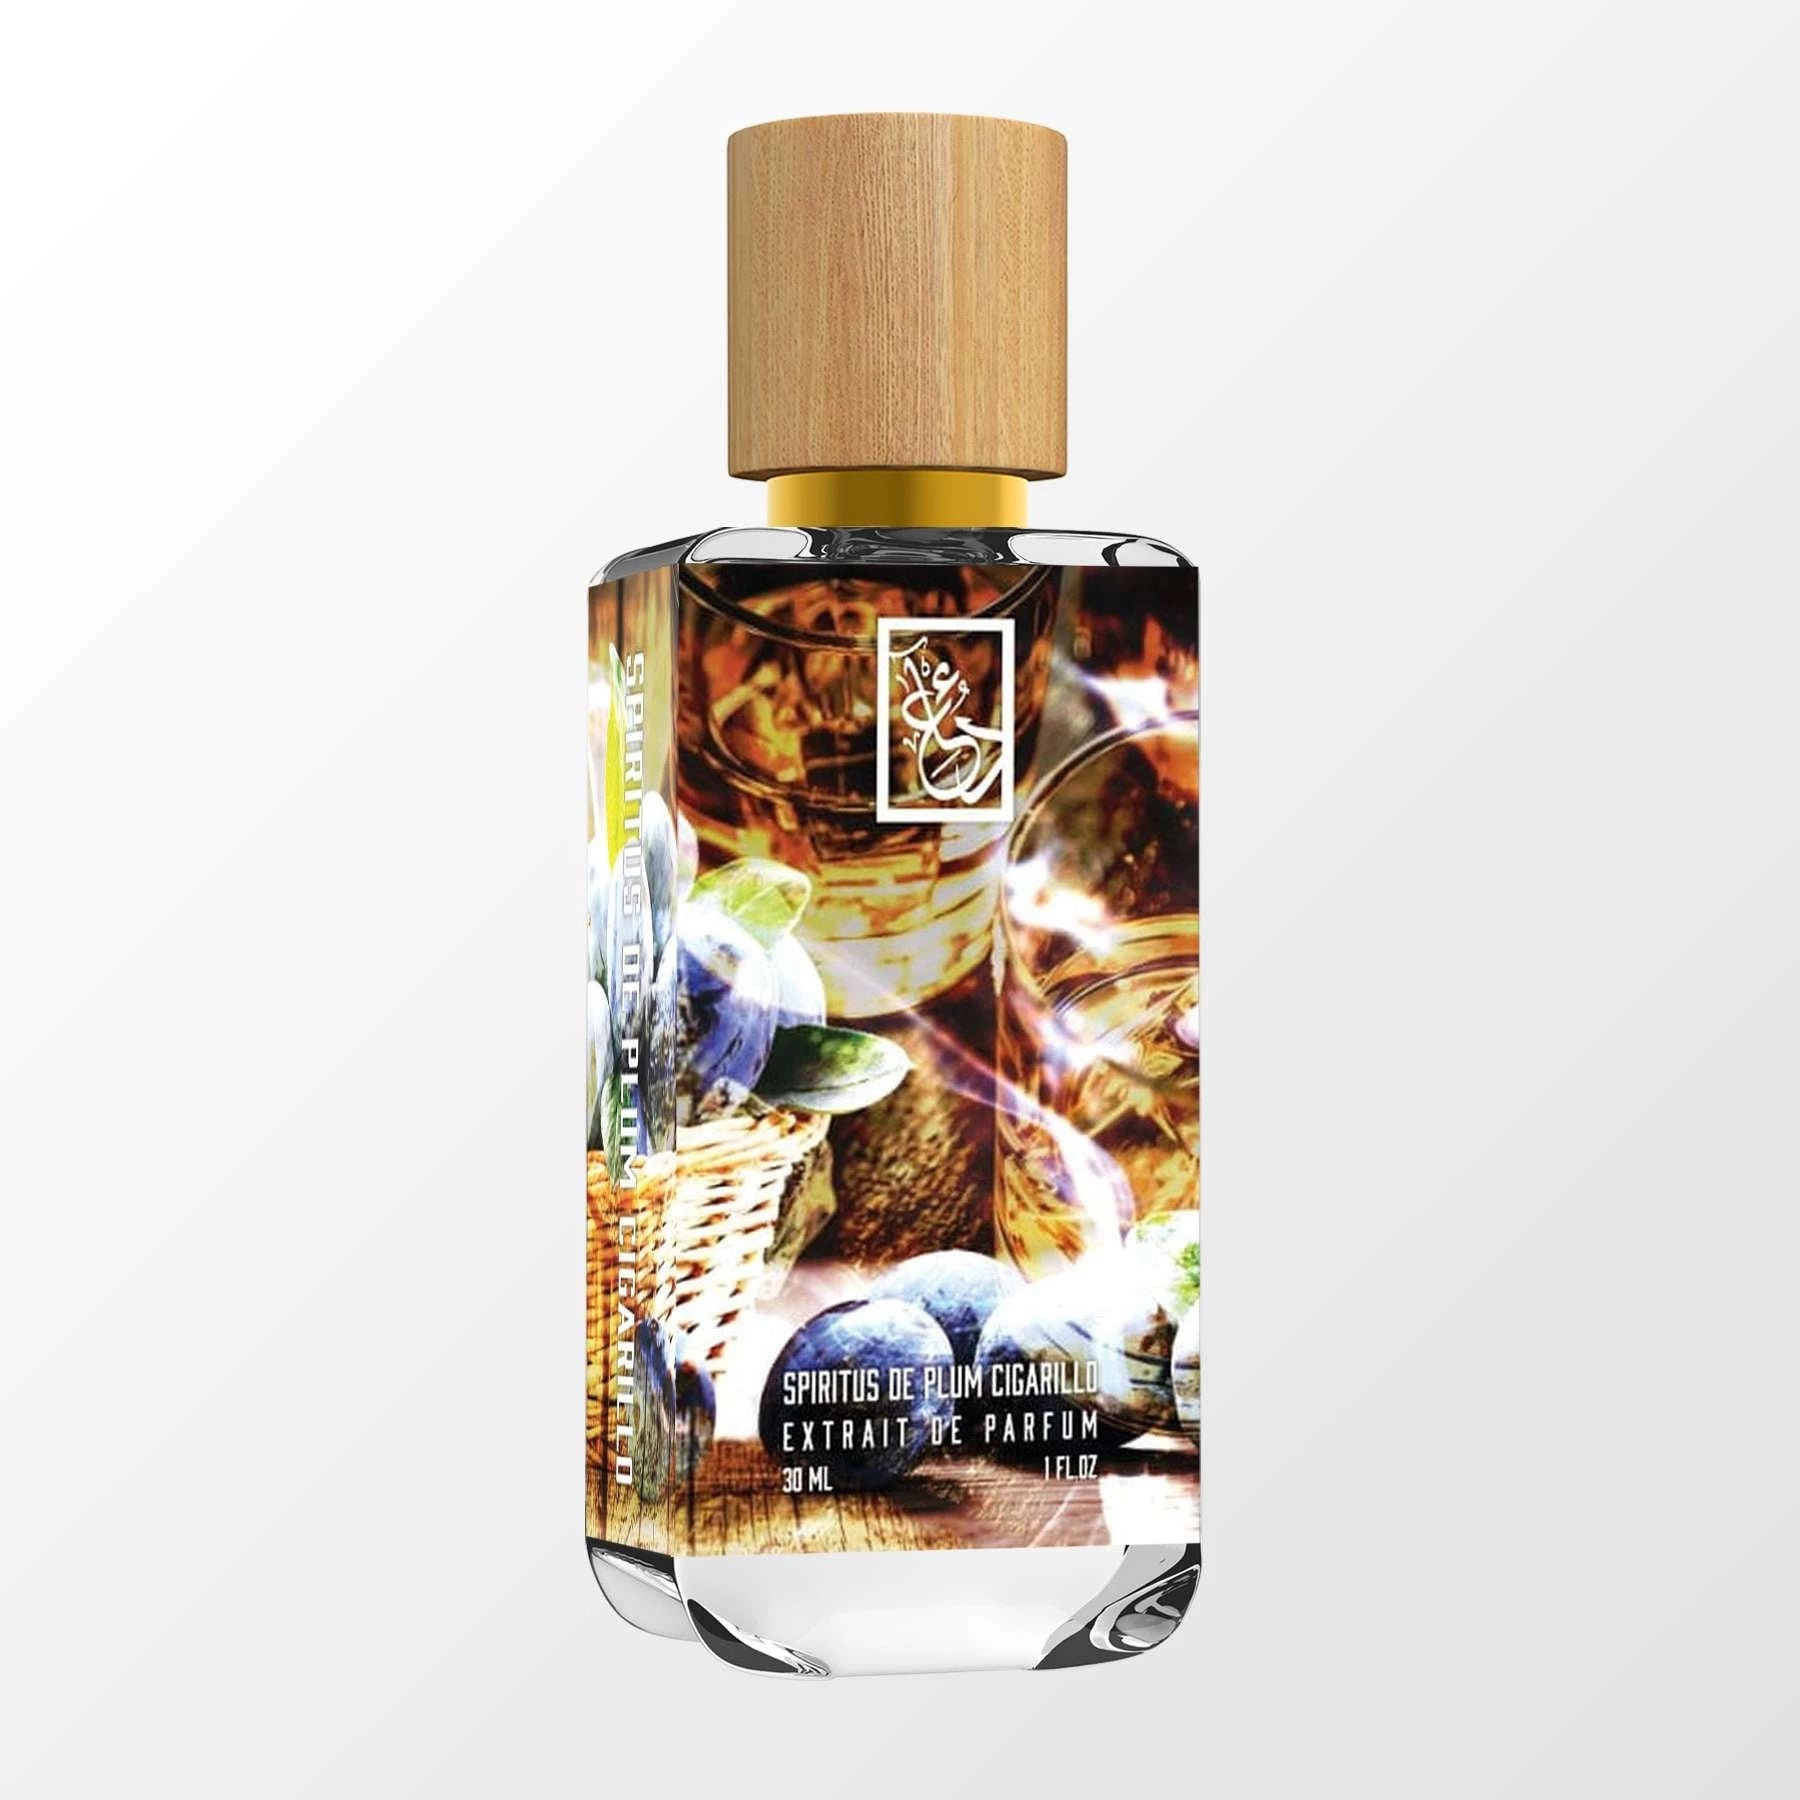 Spiritus De Plum Cigarillo - DUA FRAGRANCES - Amber - Unisex Perfume -  34ml/1.1 FL OZ - Extrait De Parfum